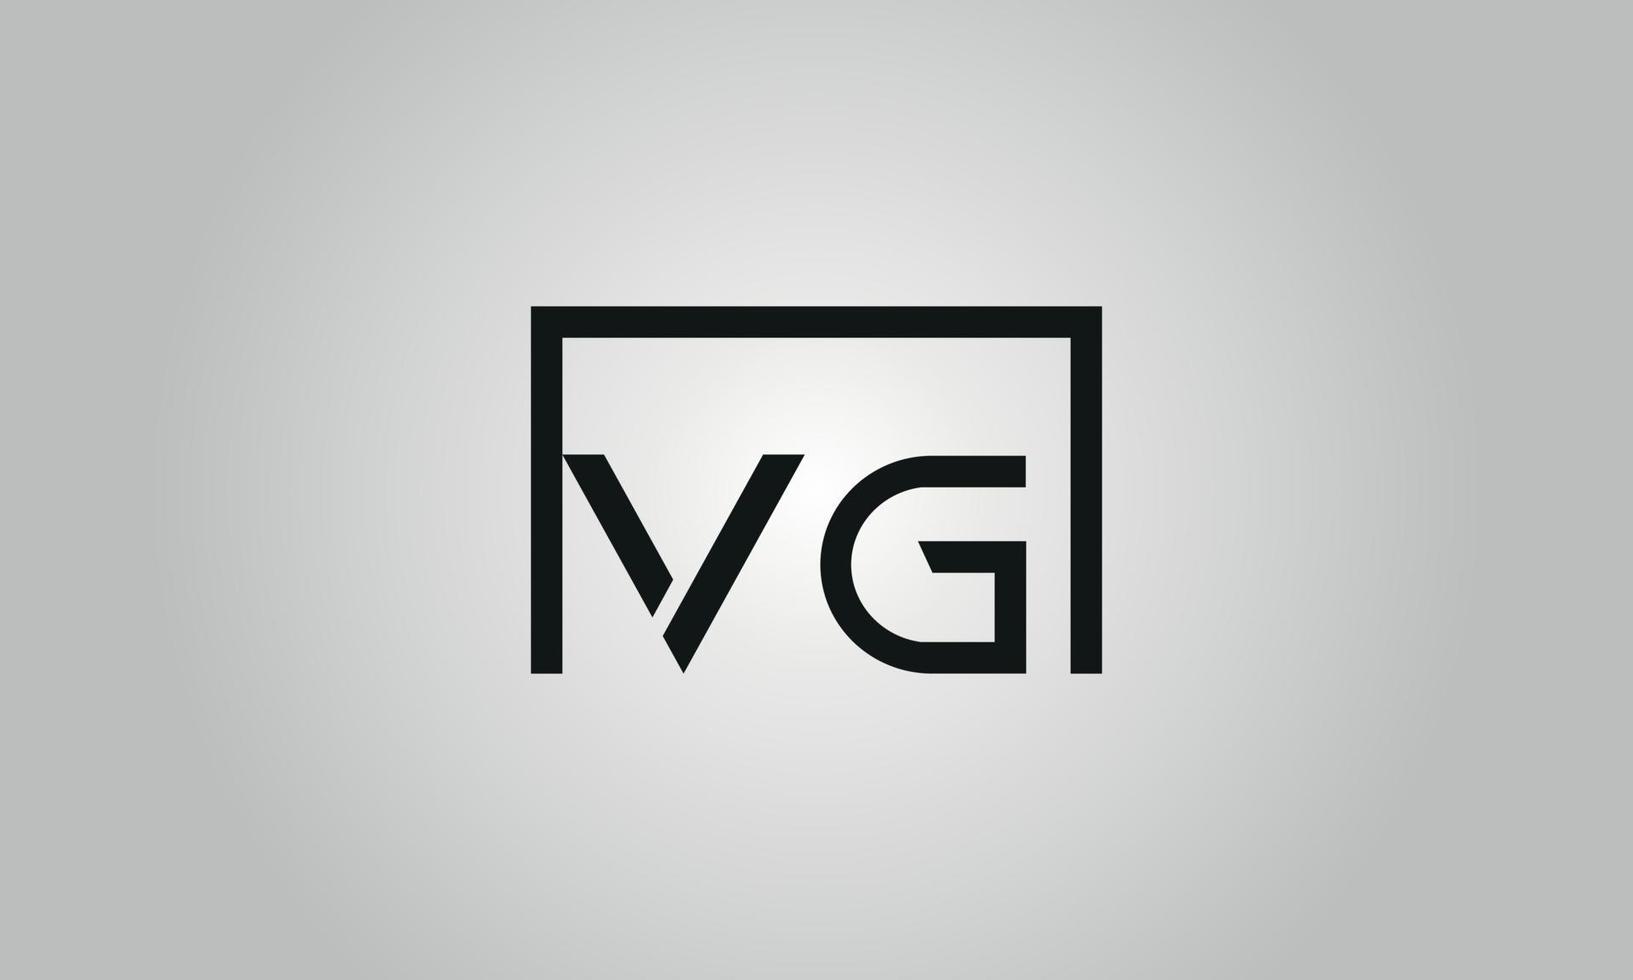 diseño del logotipo de letra vg. logotipo de vg con forma cuadrada en colores negros vector plantilla de vector libre.